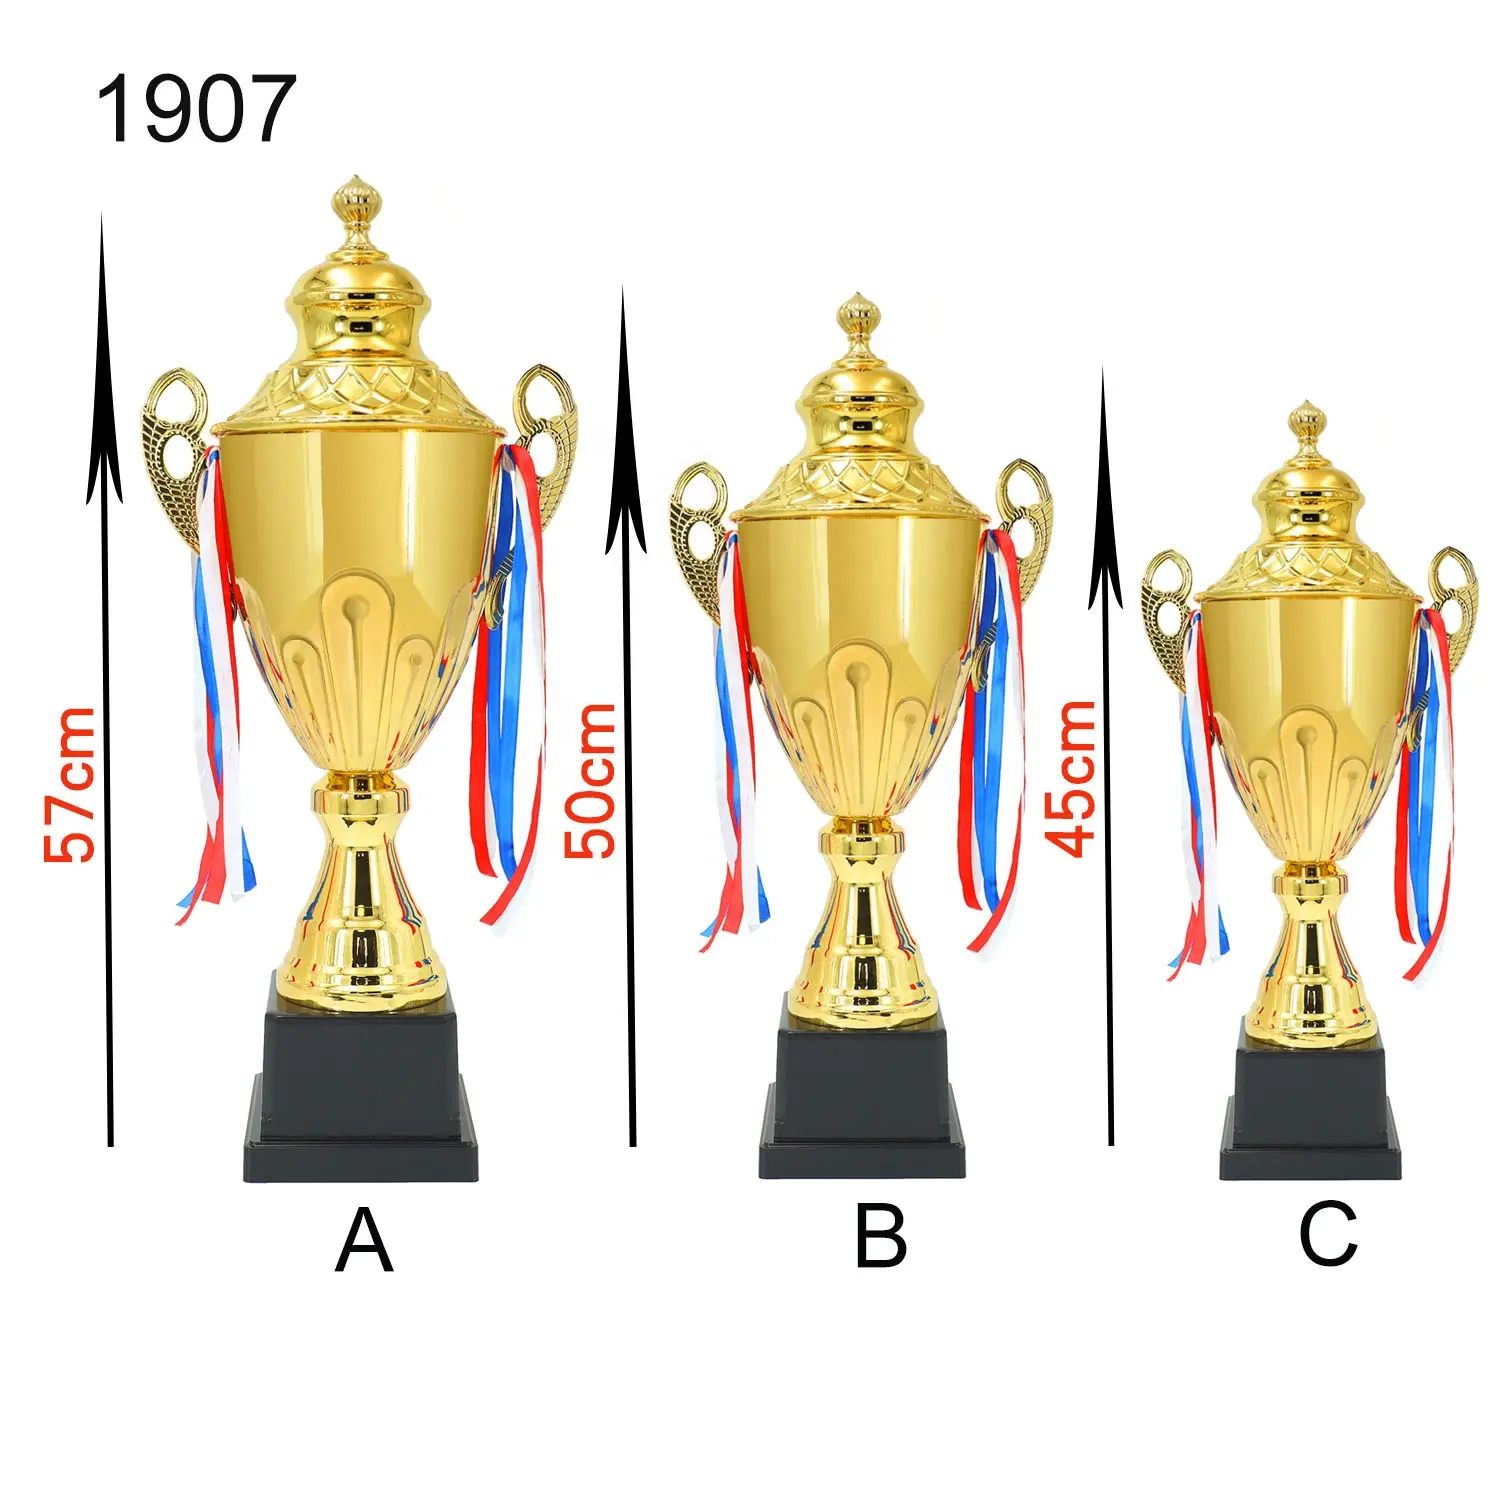 트로피 컵 맞춤형 프리미엄 금속 기념품 트로피 및 선물 Trofeos Personalizados 금도금 상 수상자 트로피 컵